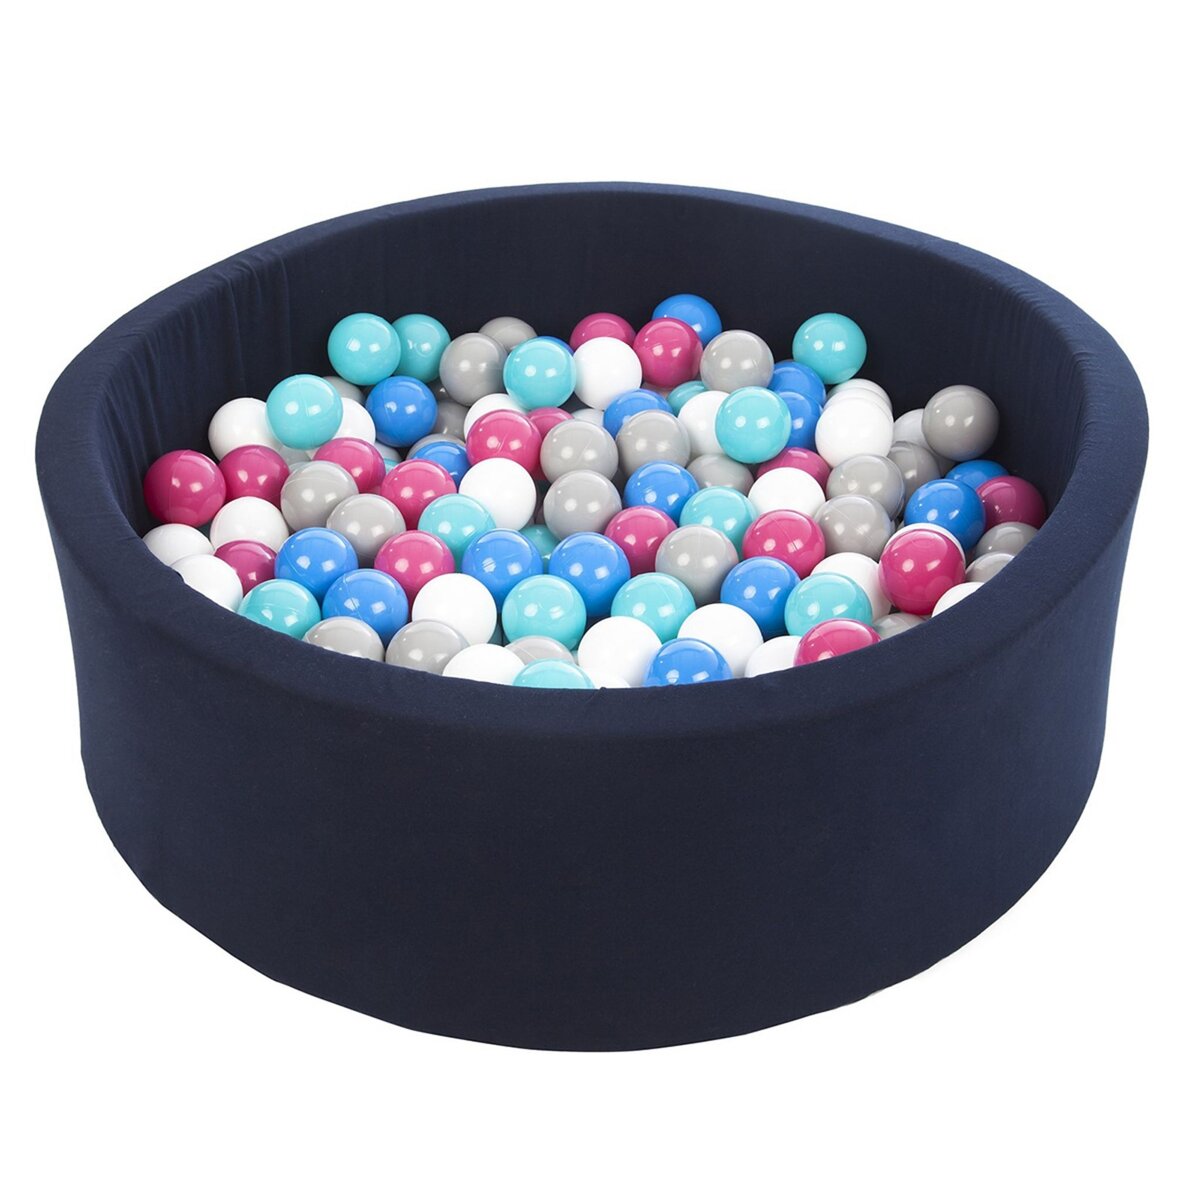  Piscine à balles Aire de jeu + 200 balles bleu marine blanc,bleu,rose,gris,turquoise